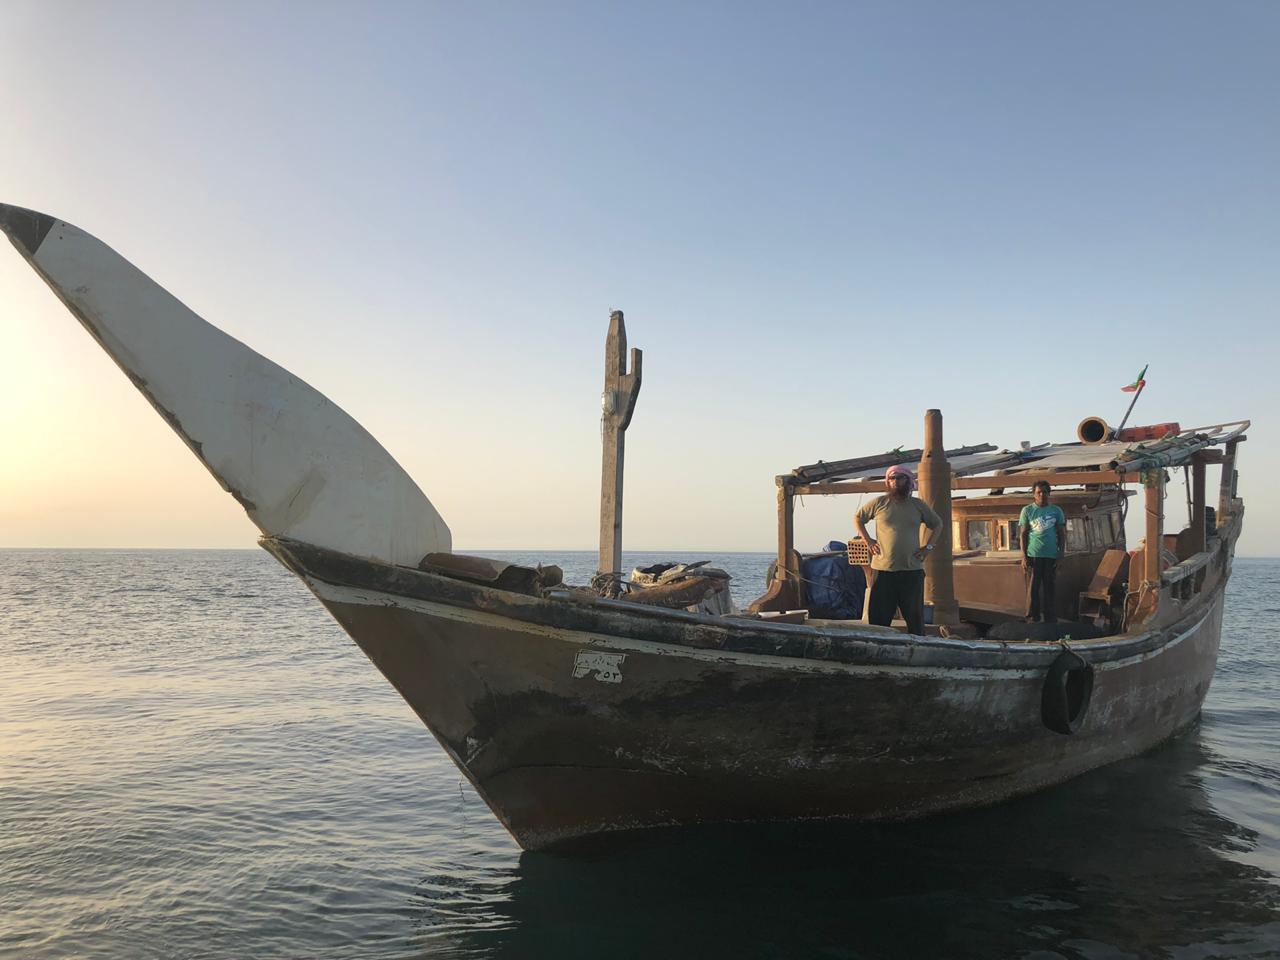 حرس الحدود ينقذ مواطناً كويتياً تعطل قاربه في المياه الإقليمية السعودية